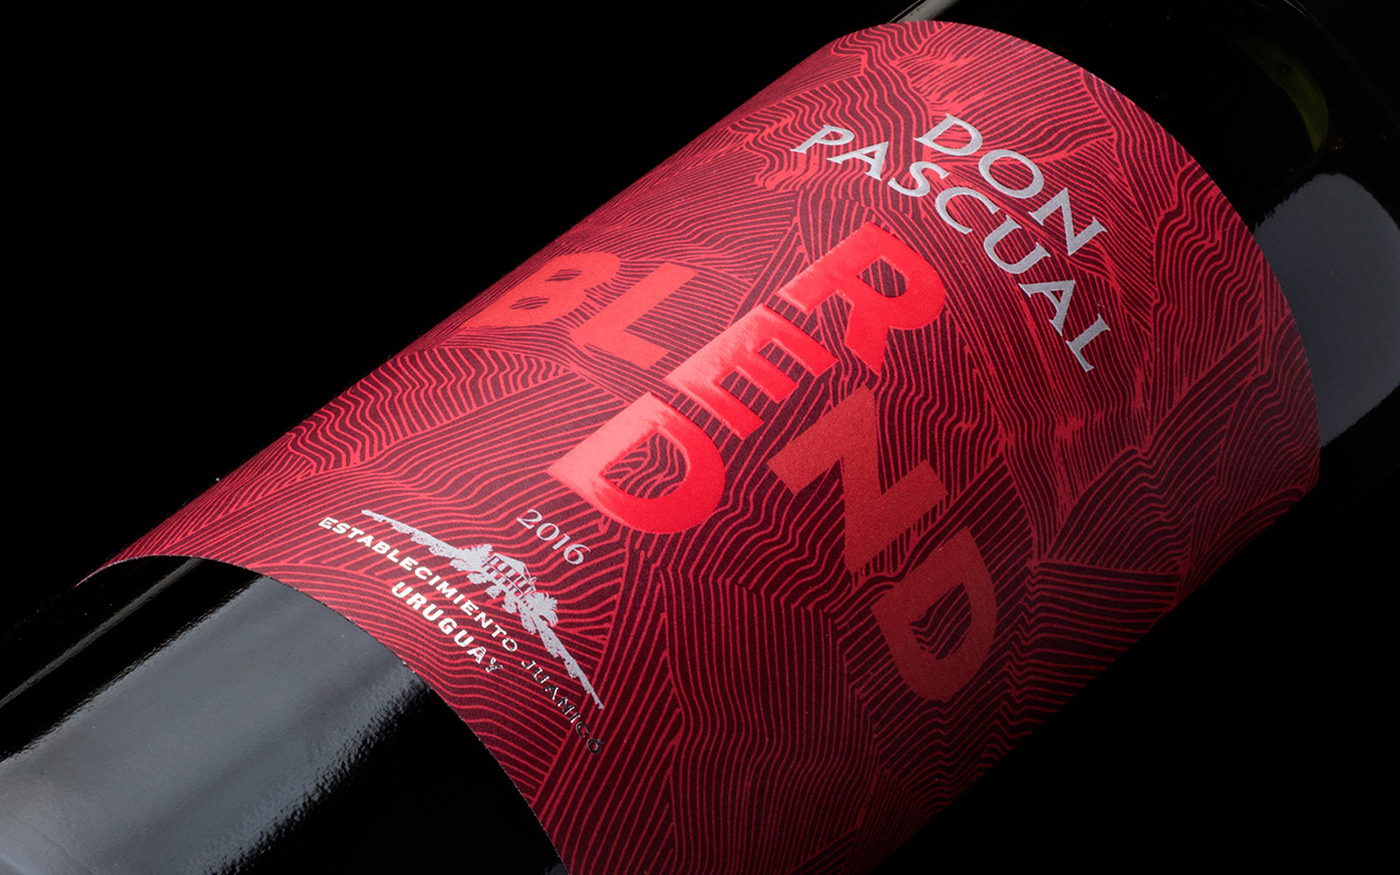 wine uruguay dizen diseño design Packaging Label etiqueta